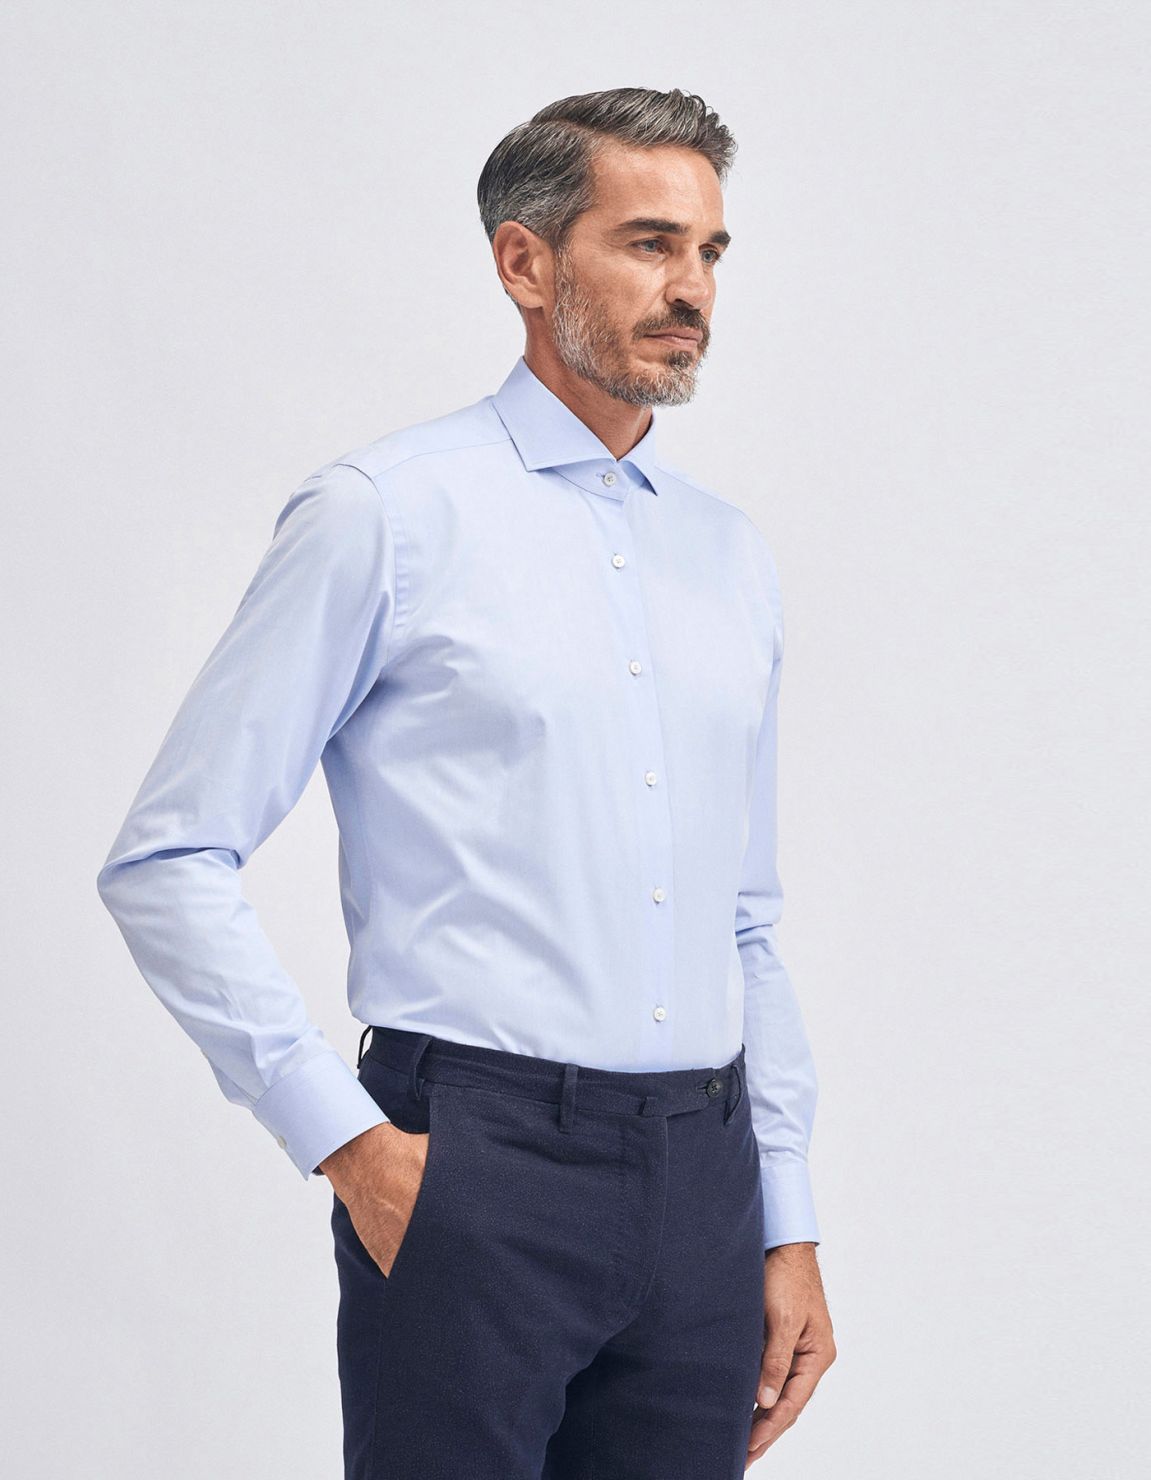 Shirt Collar small cutaway Light Blue Twill Slim Fit 1